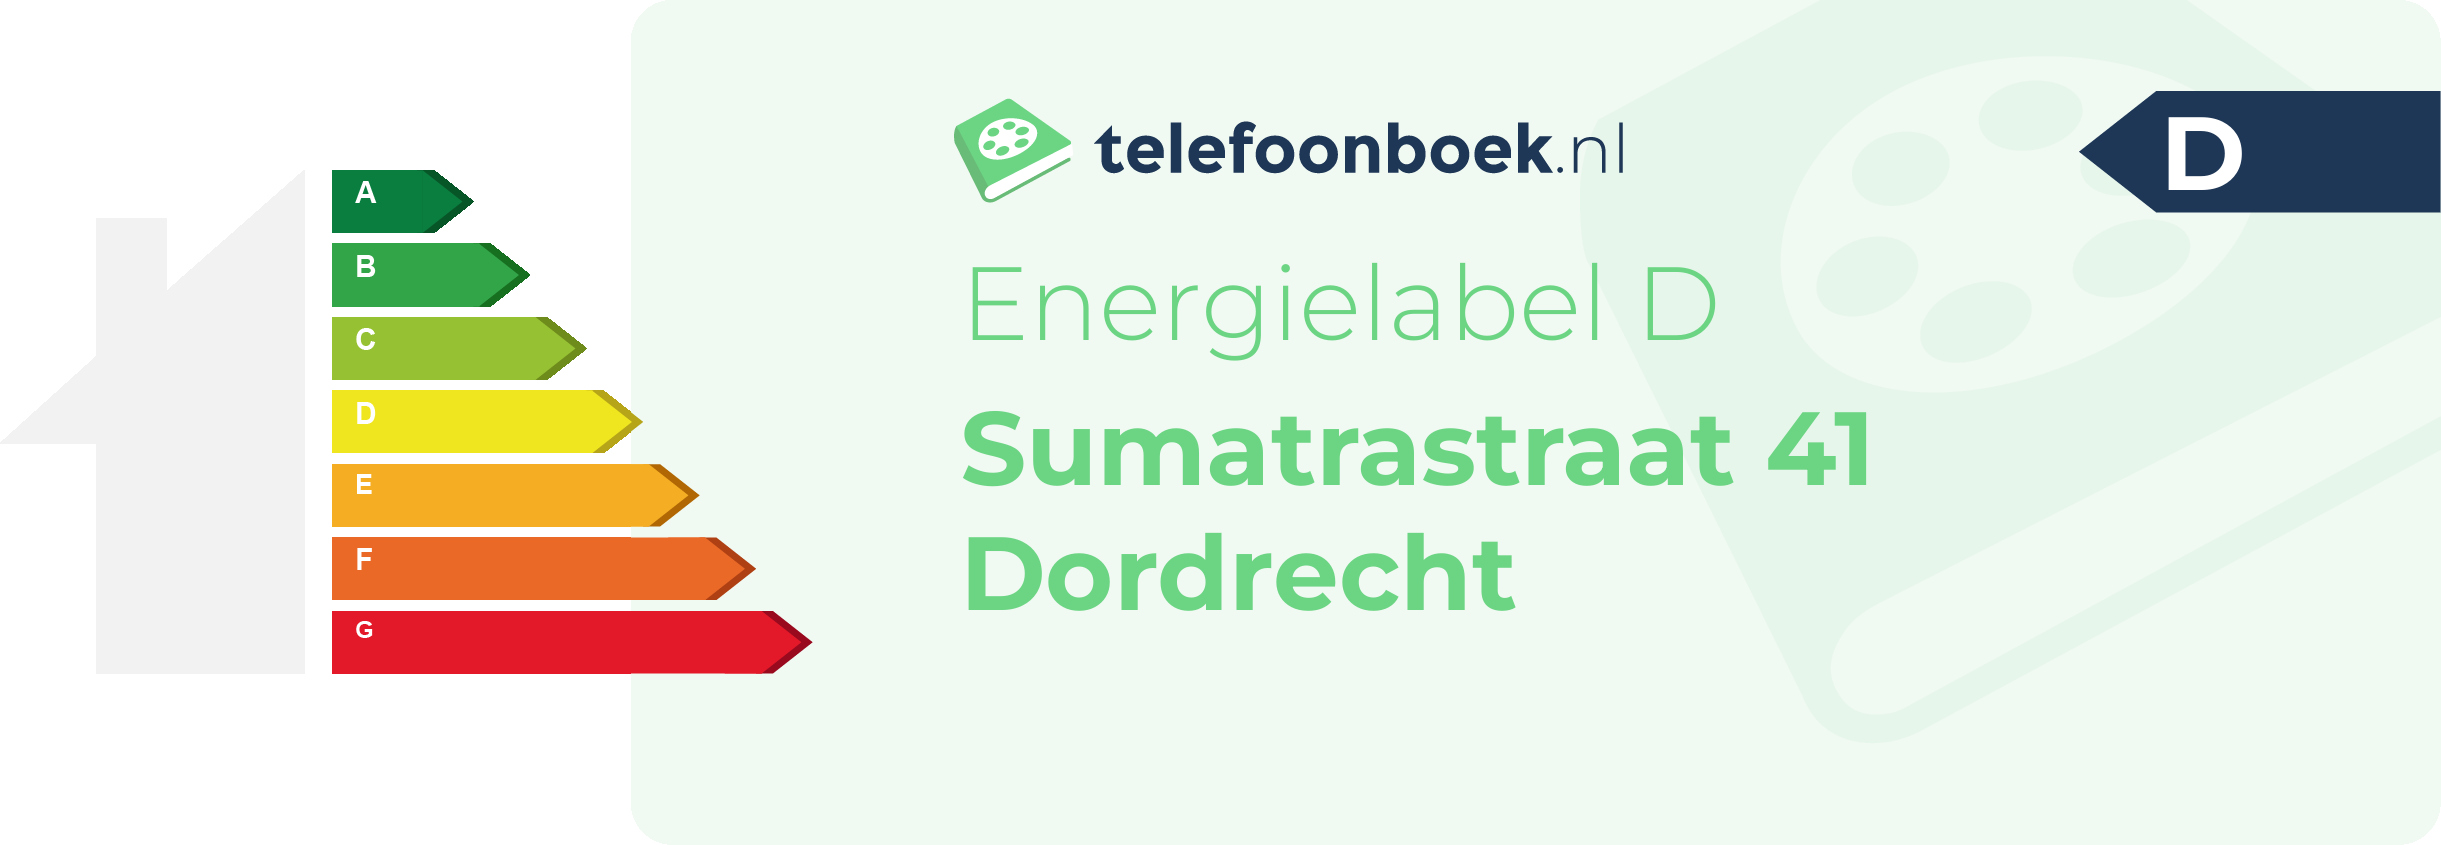 Energielabel Sumatrastraat 41 Dordrecht